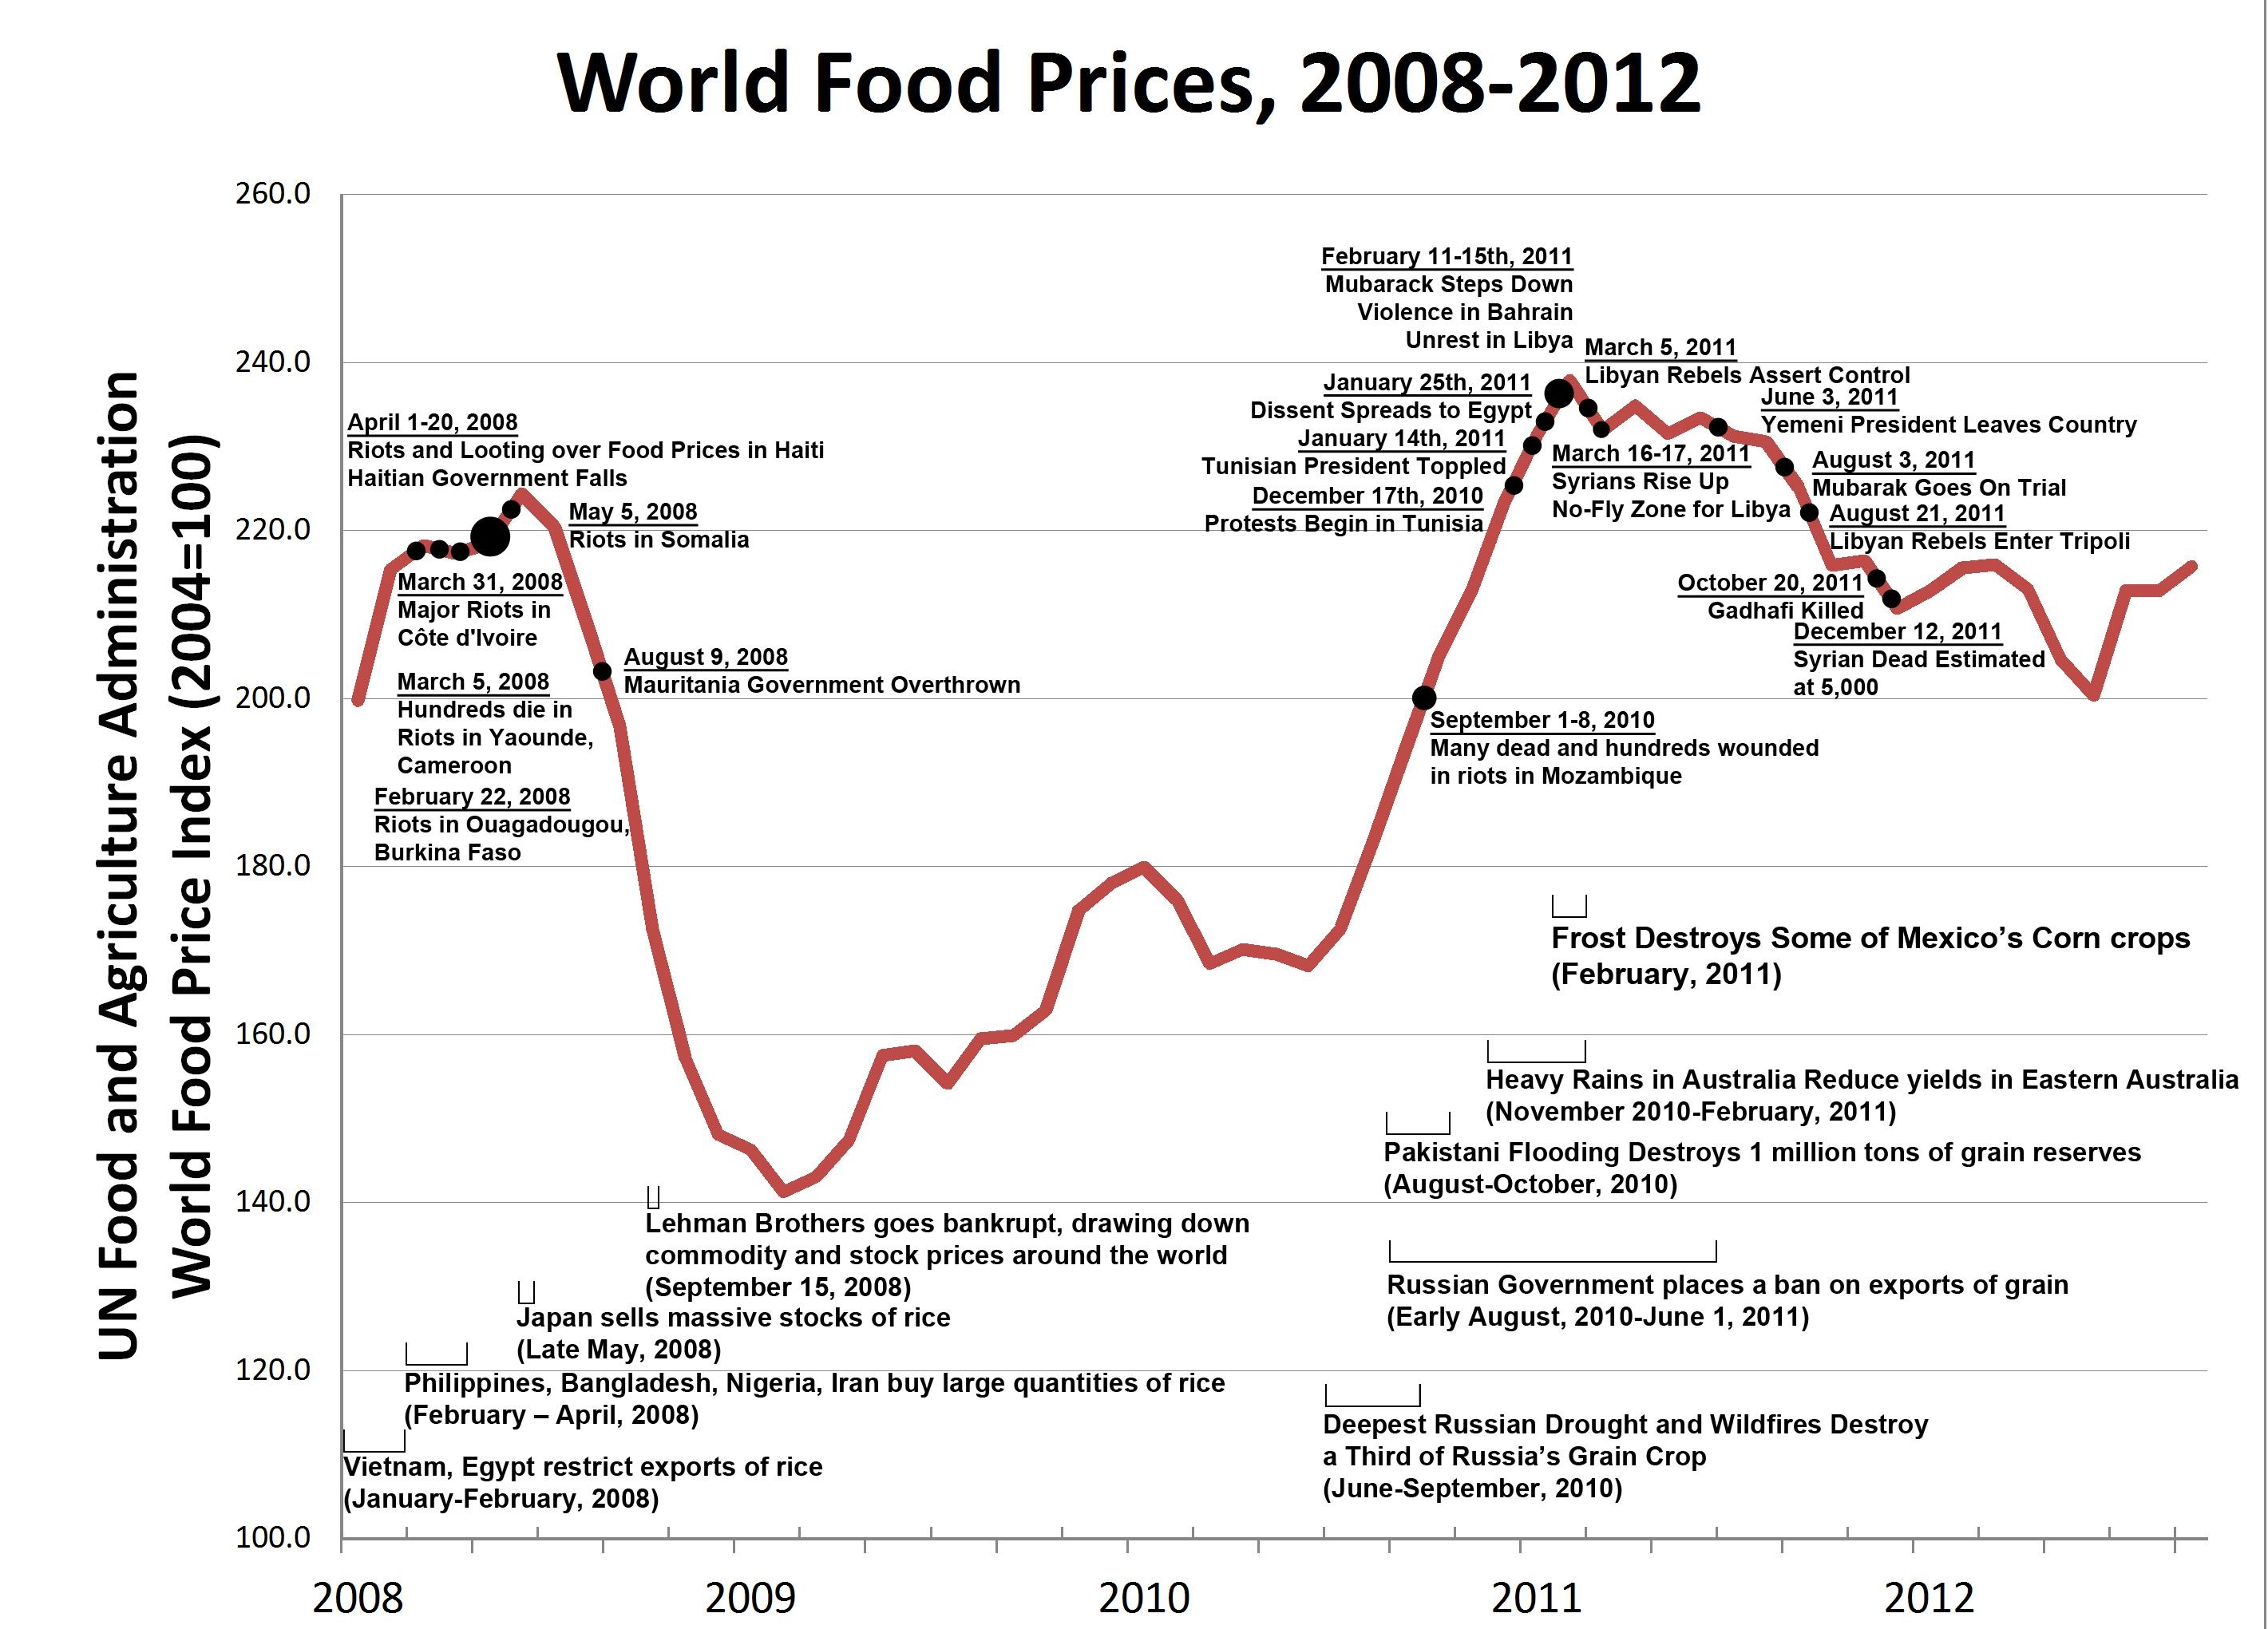 Цены на продукты питания в мире по данным продовольственного индекса ФАО ООН (2004 год равен 100) с 2008 по 2012 год